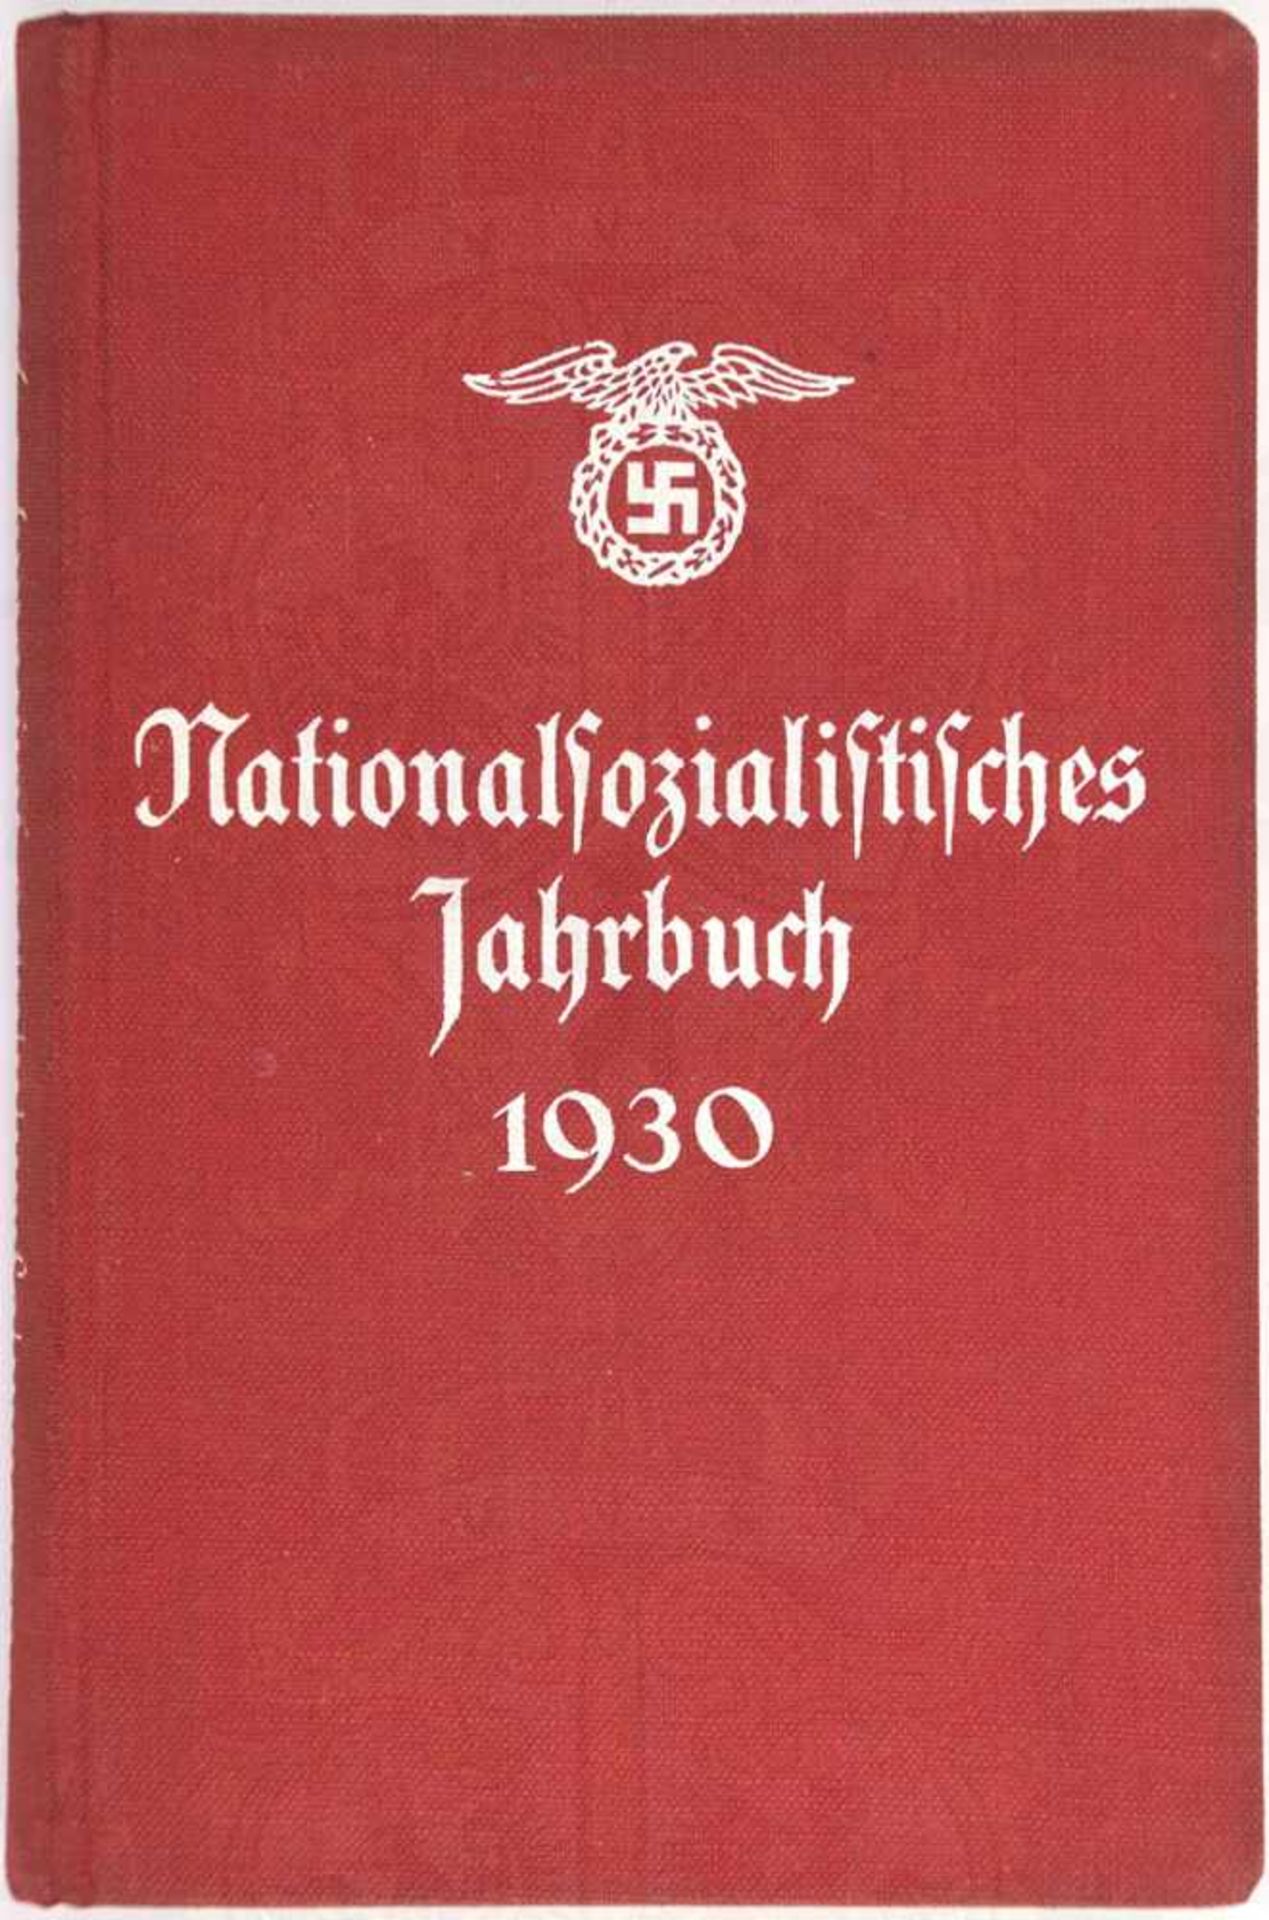 NATIONALSOZIALISTISCHES JAHRBUCH 1930, Franz Eher Verlag München, 264 S., Abb., Ehrentafel,